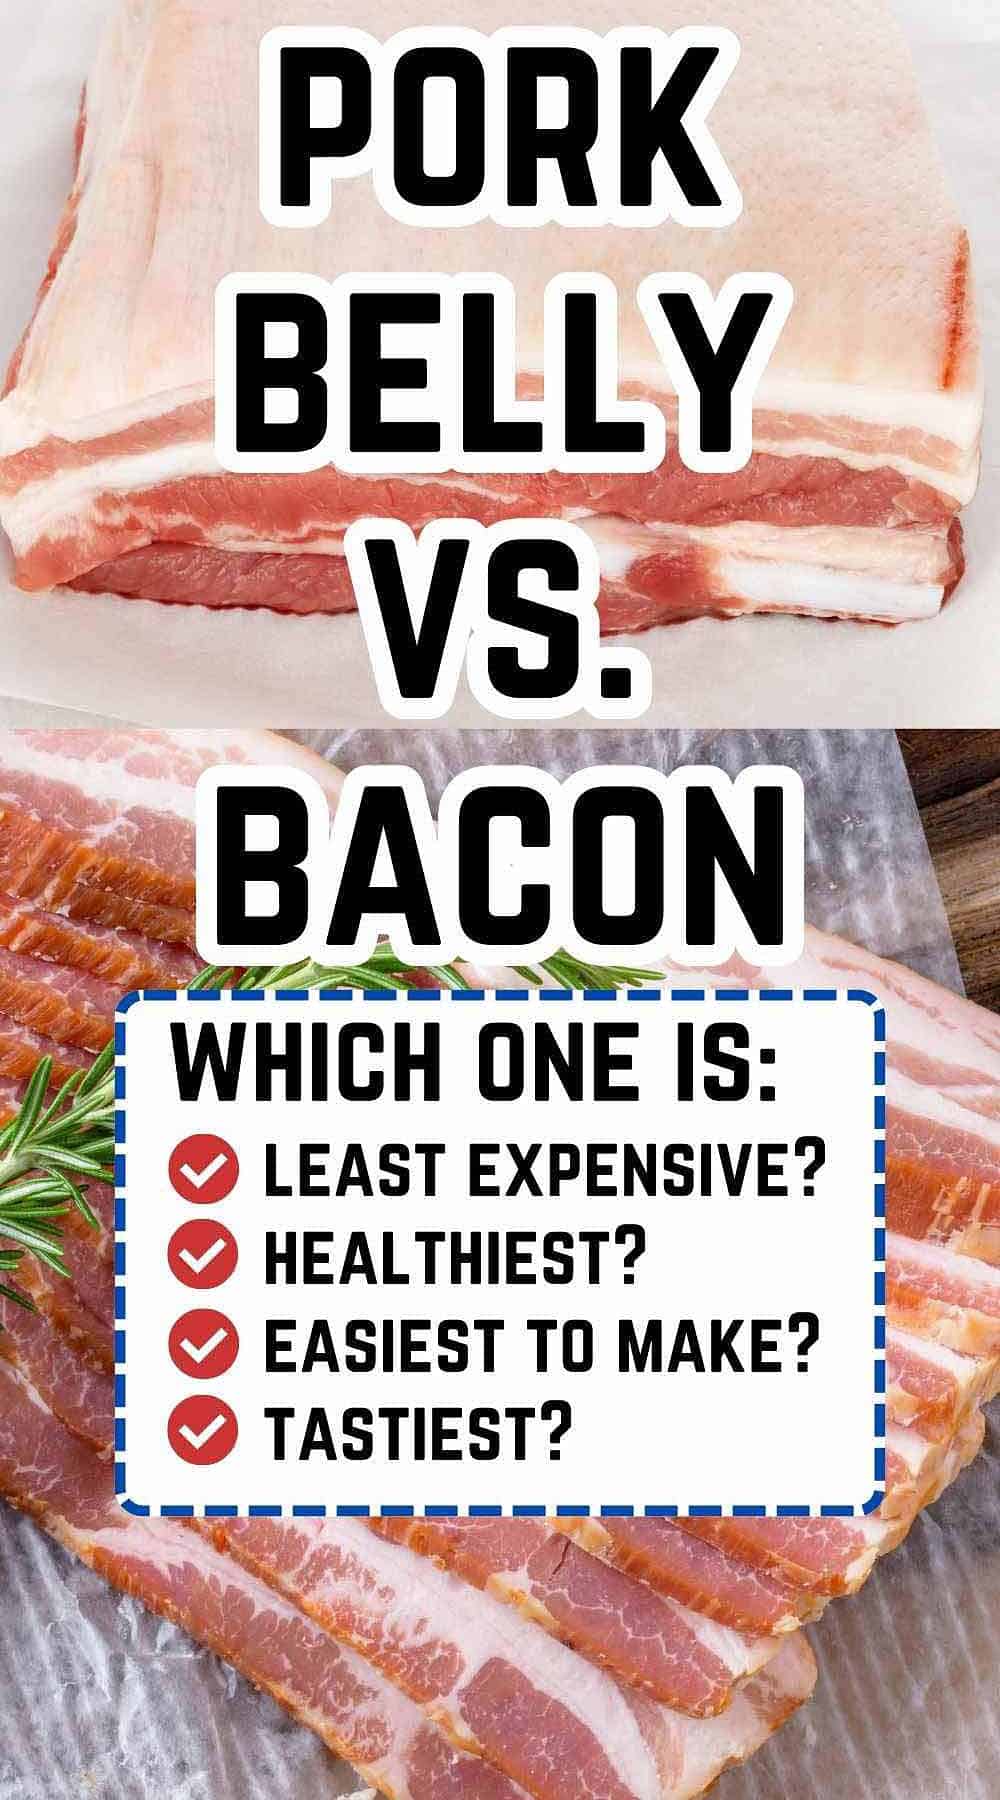 A slab of salt pork on top, and sliced raw bacon on the bottom.